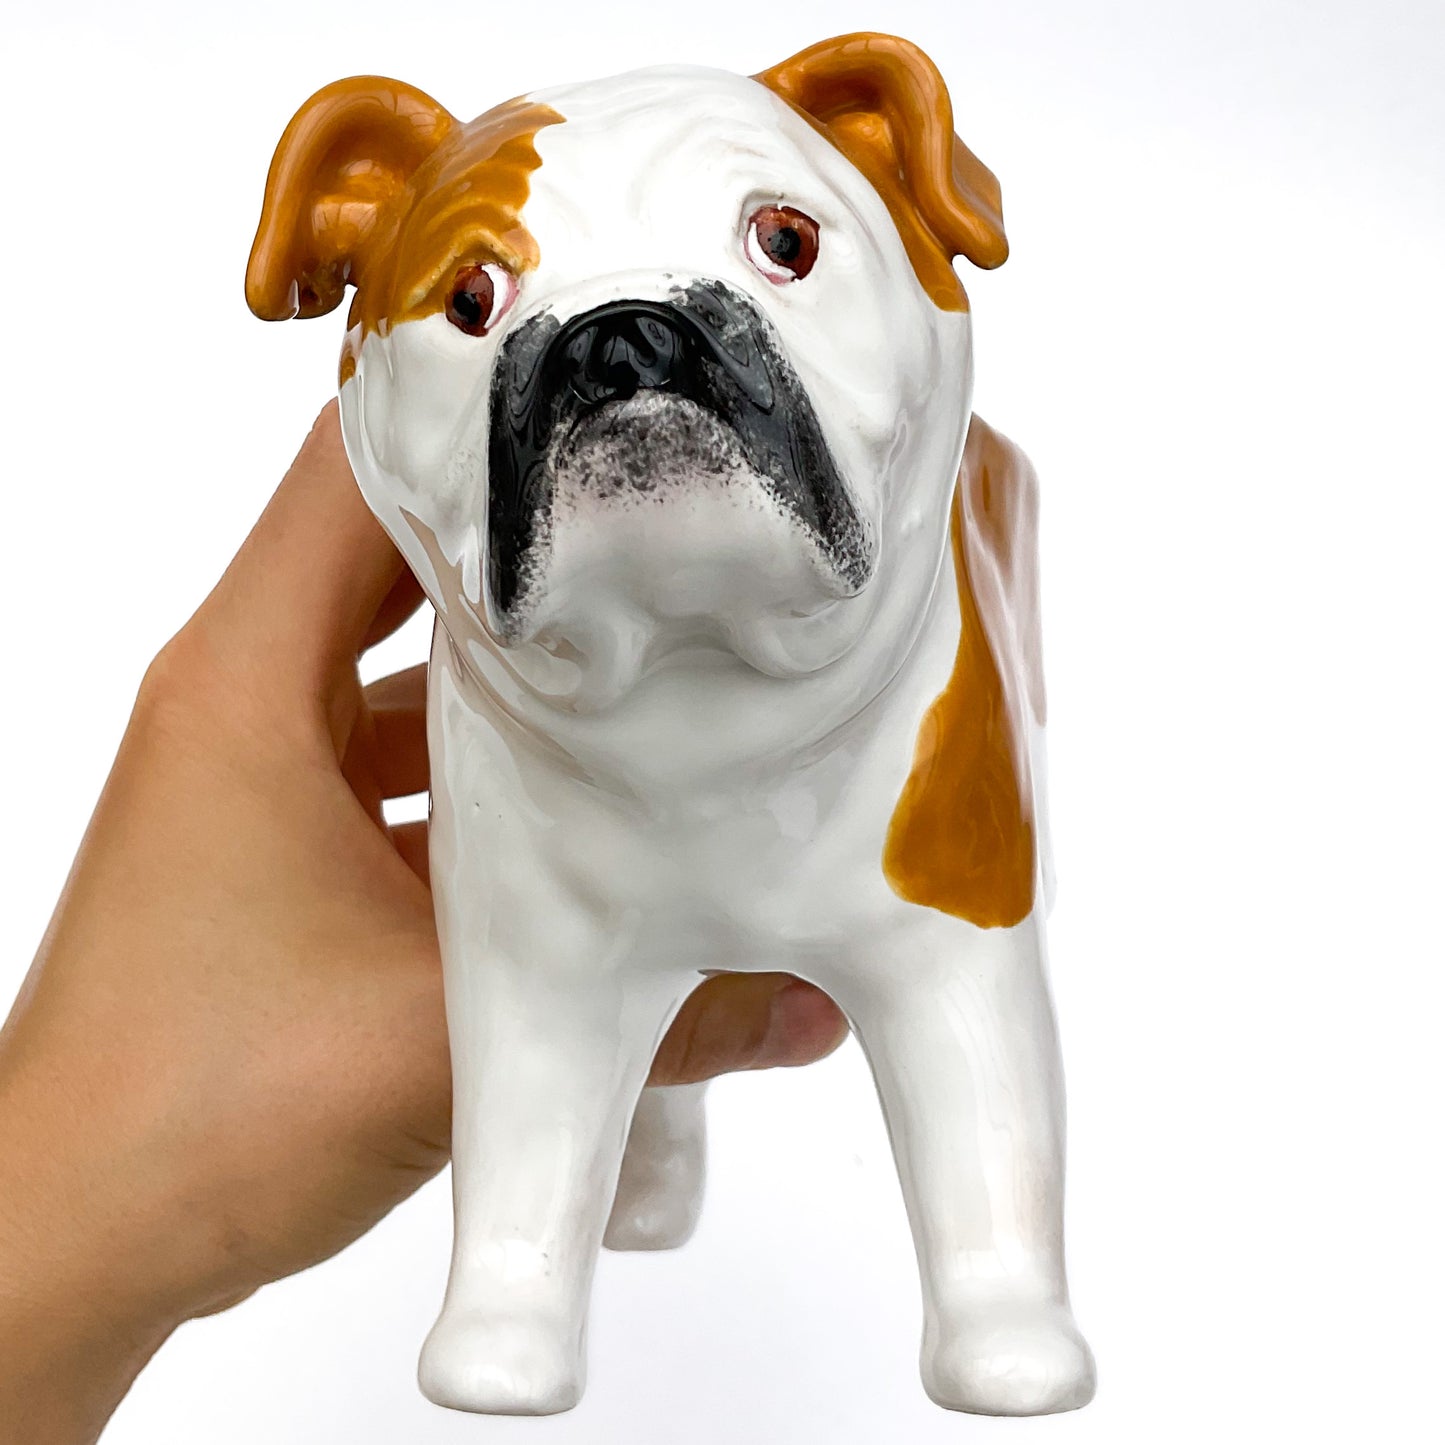 English Bulldog Planter - Ceramic Dog Plant Pot